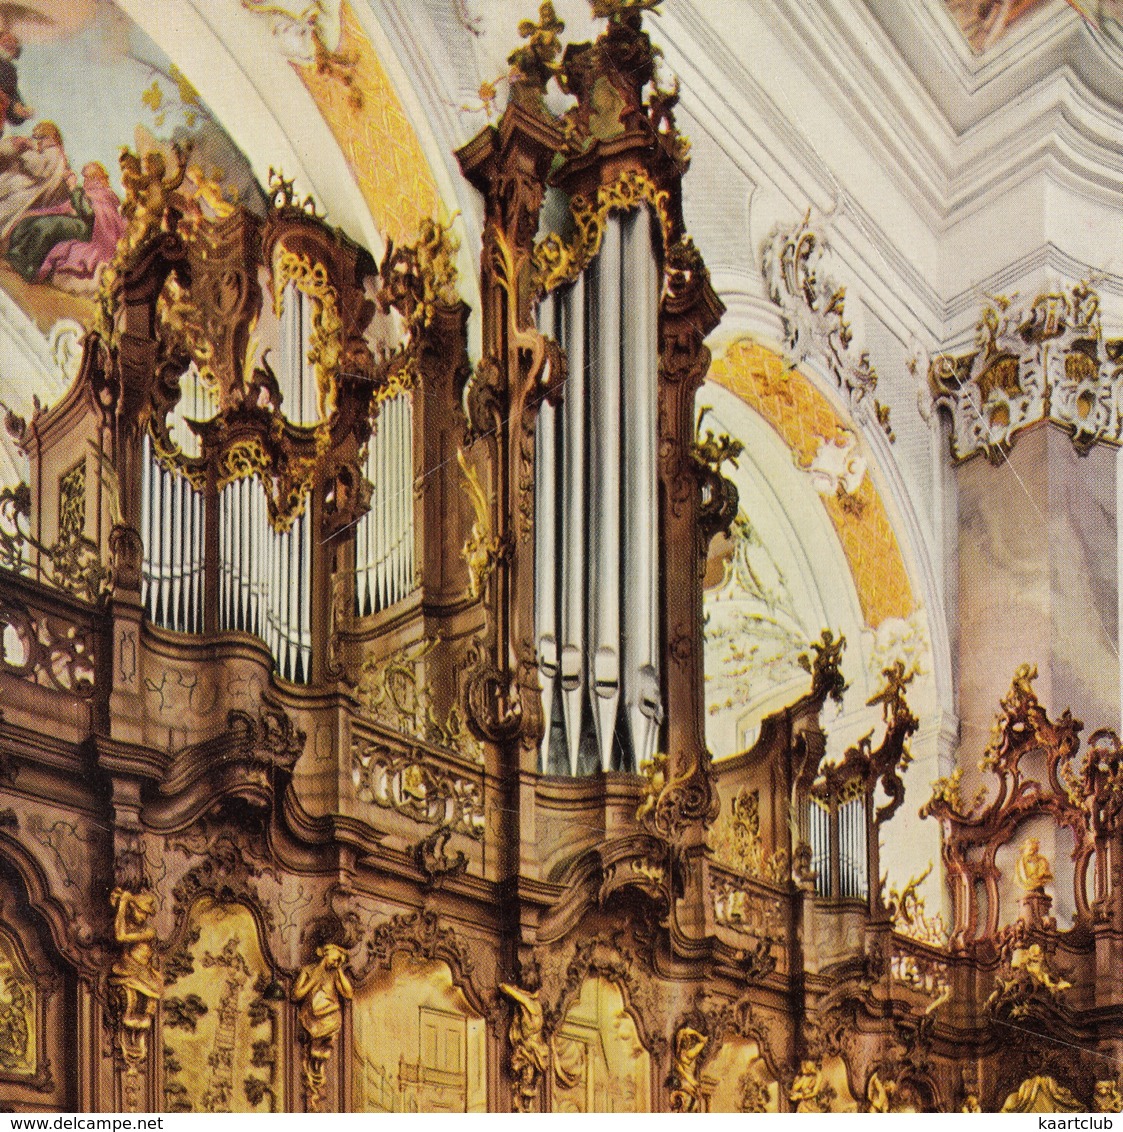 Ottobeuren - Basilika - Chorgestühl Mit Orgel - (ORGEL / ORGAN / ORGUE ) - Mindelheim